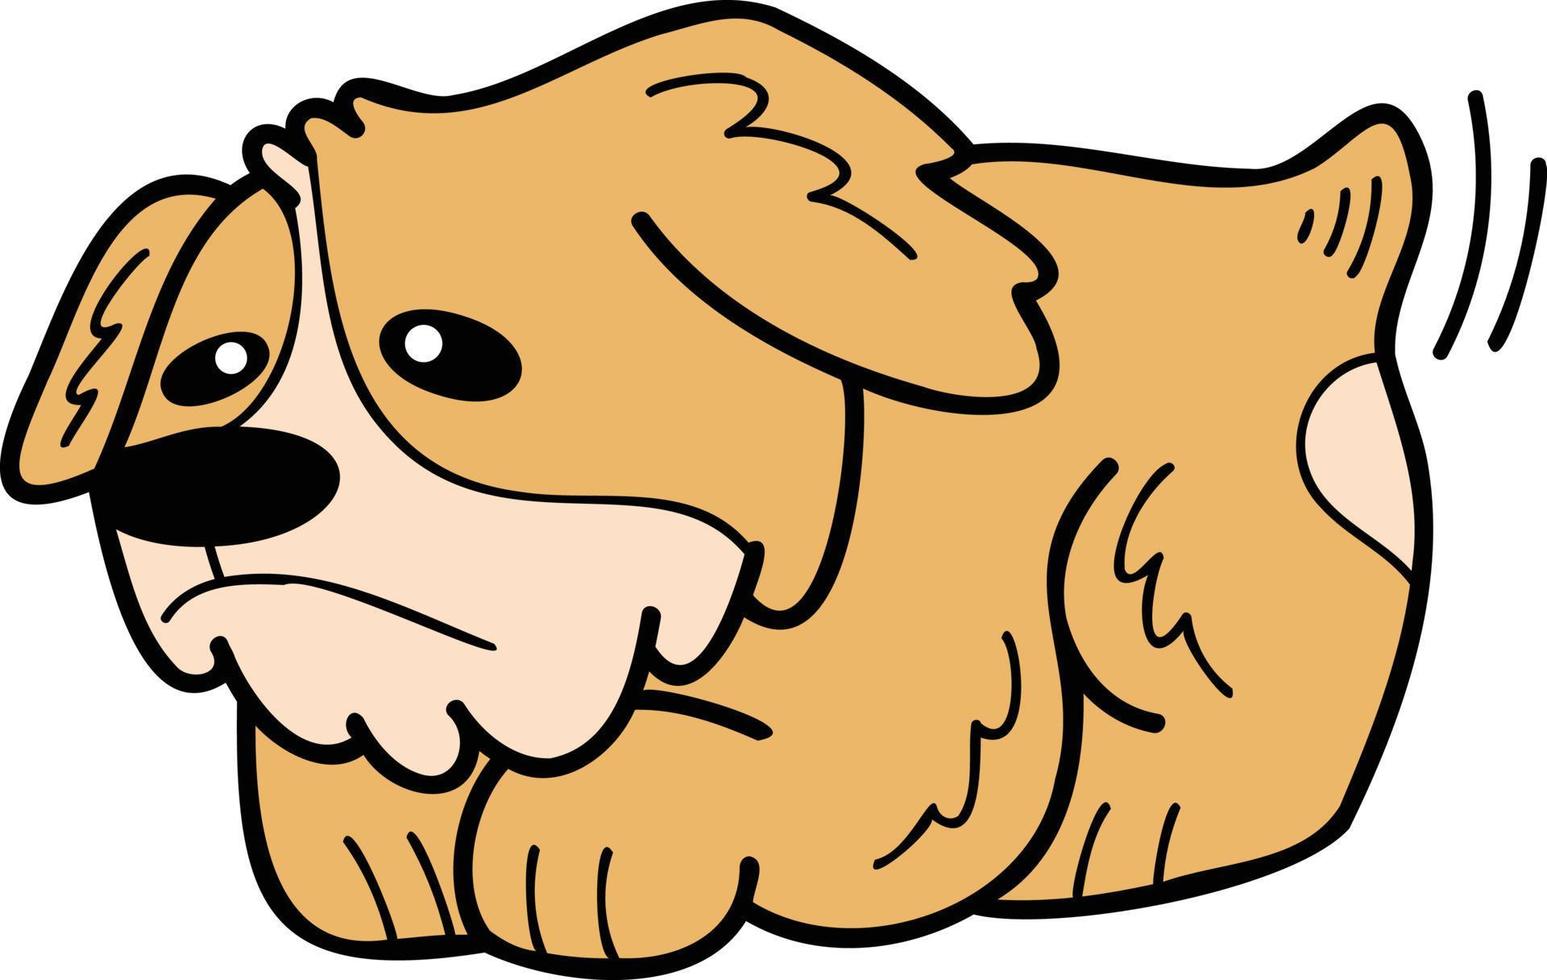 el perro corgi dibujado a mano es una ilustración triste en estilo garabato vector